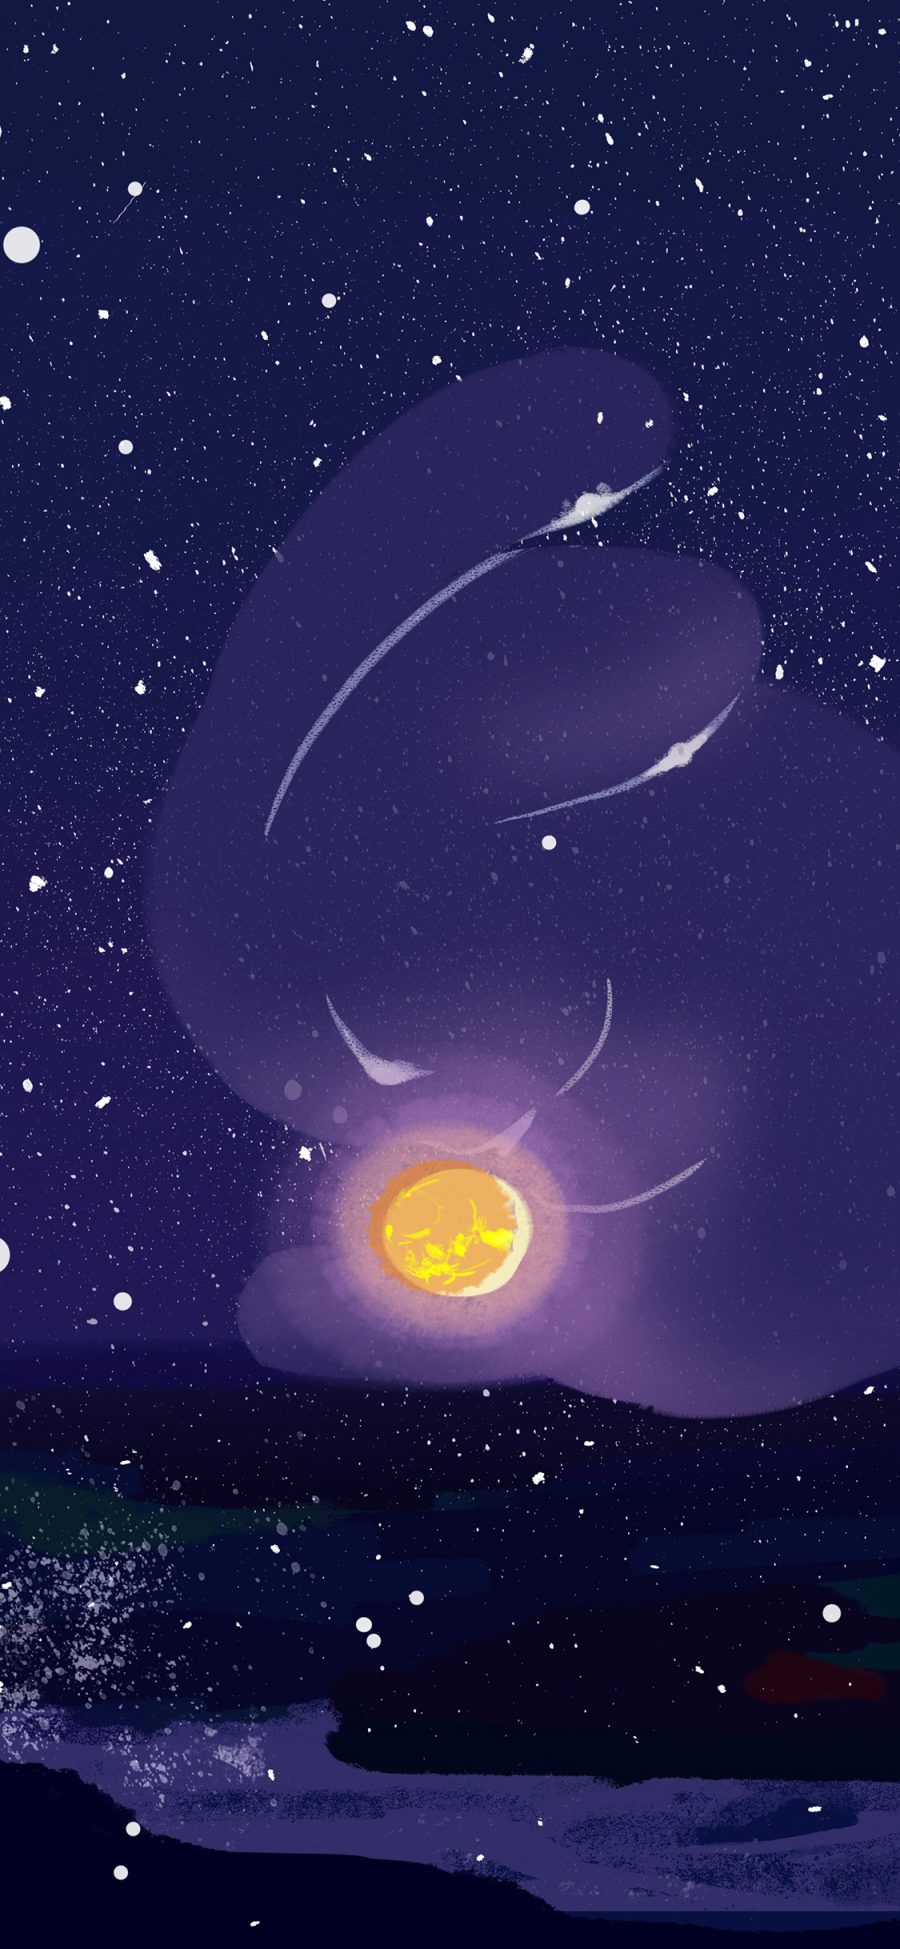 [2436×1125]插图 夜景 星空 月亮 苹果手机动漫壁纸图片